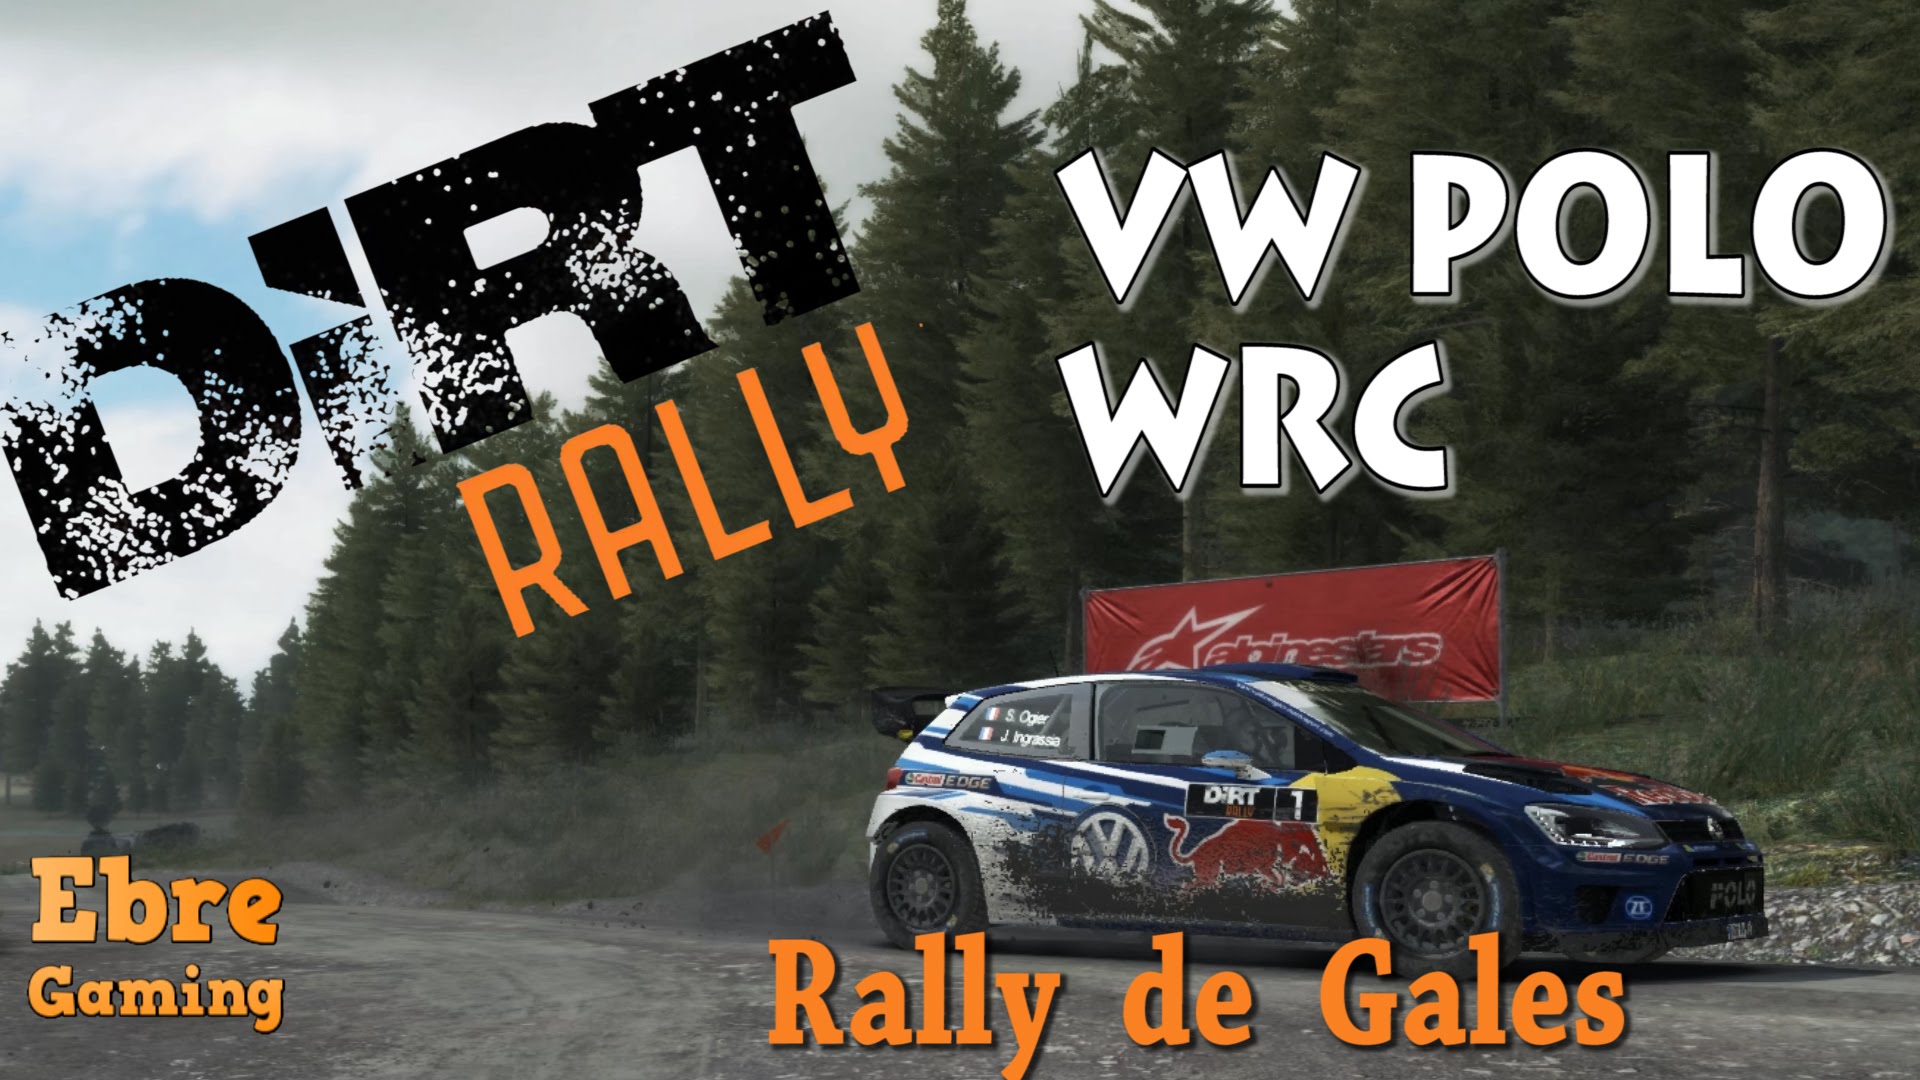 Tram al rally de Gales amb el Polo WRC || Dirt Rally de EbreGaming